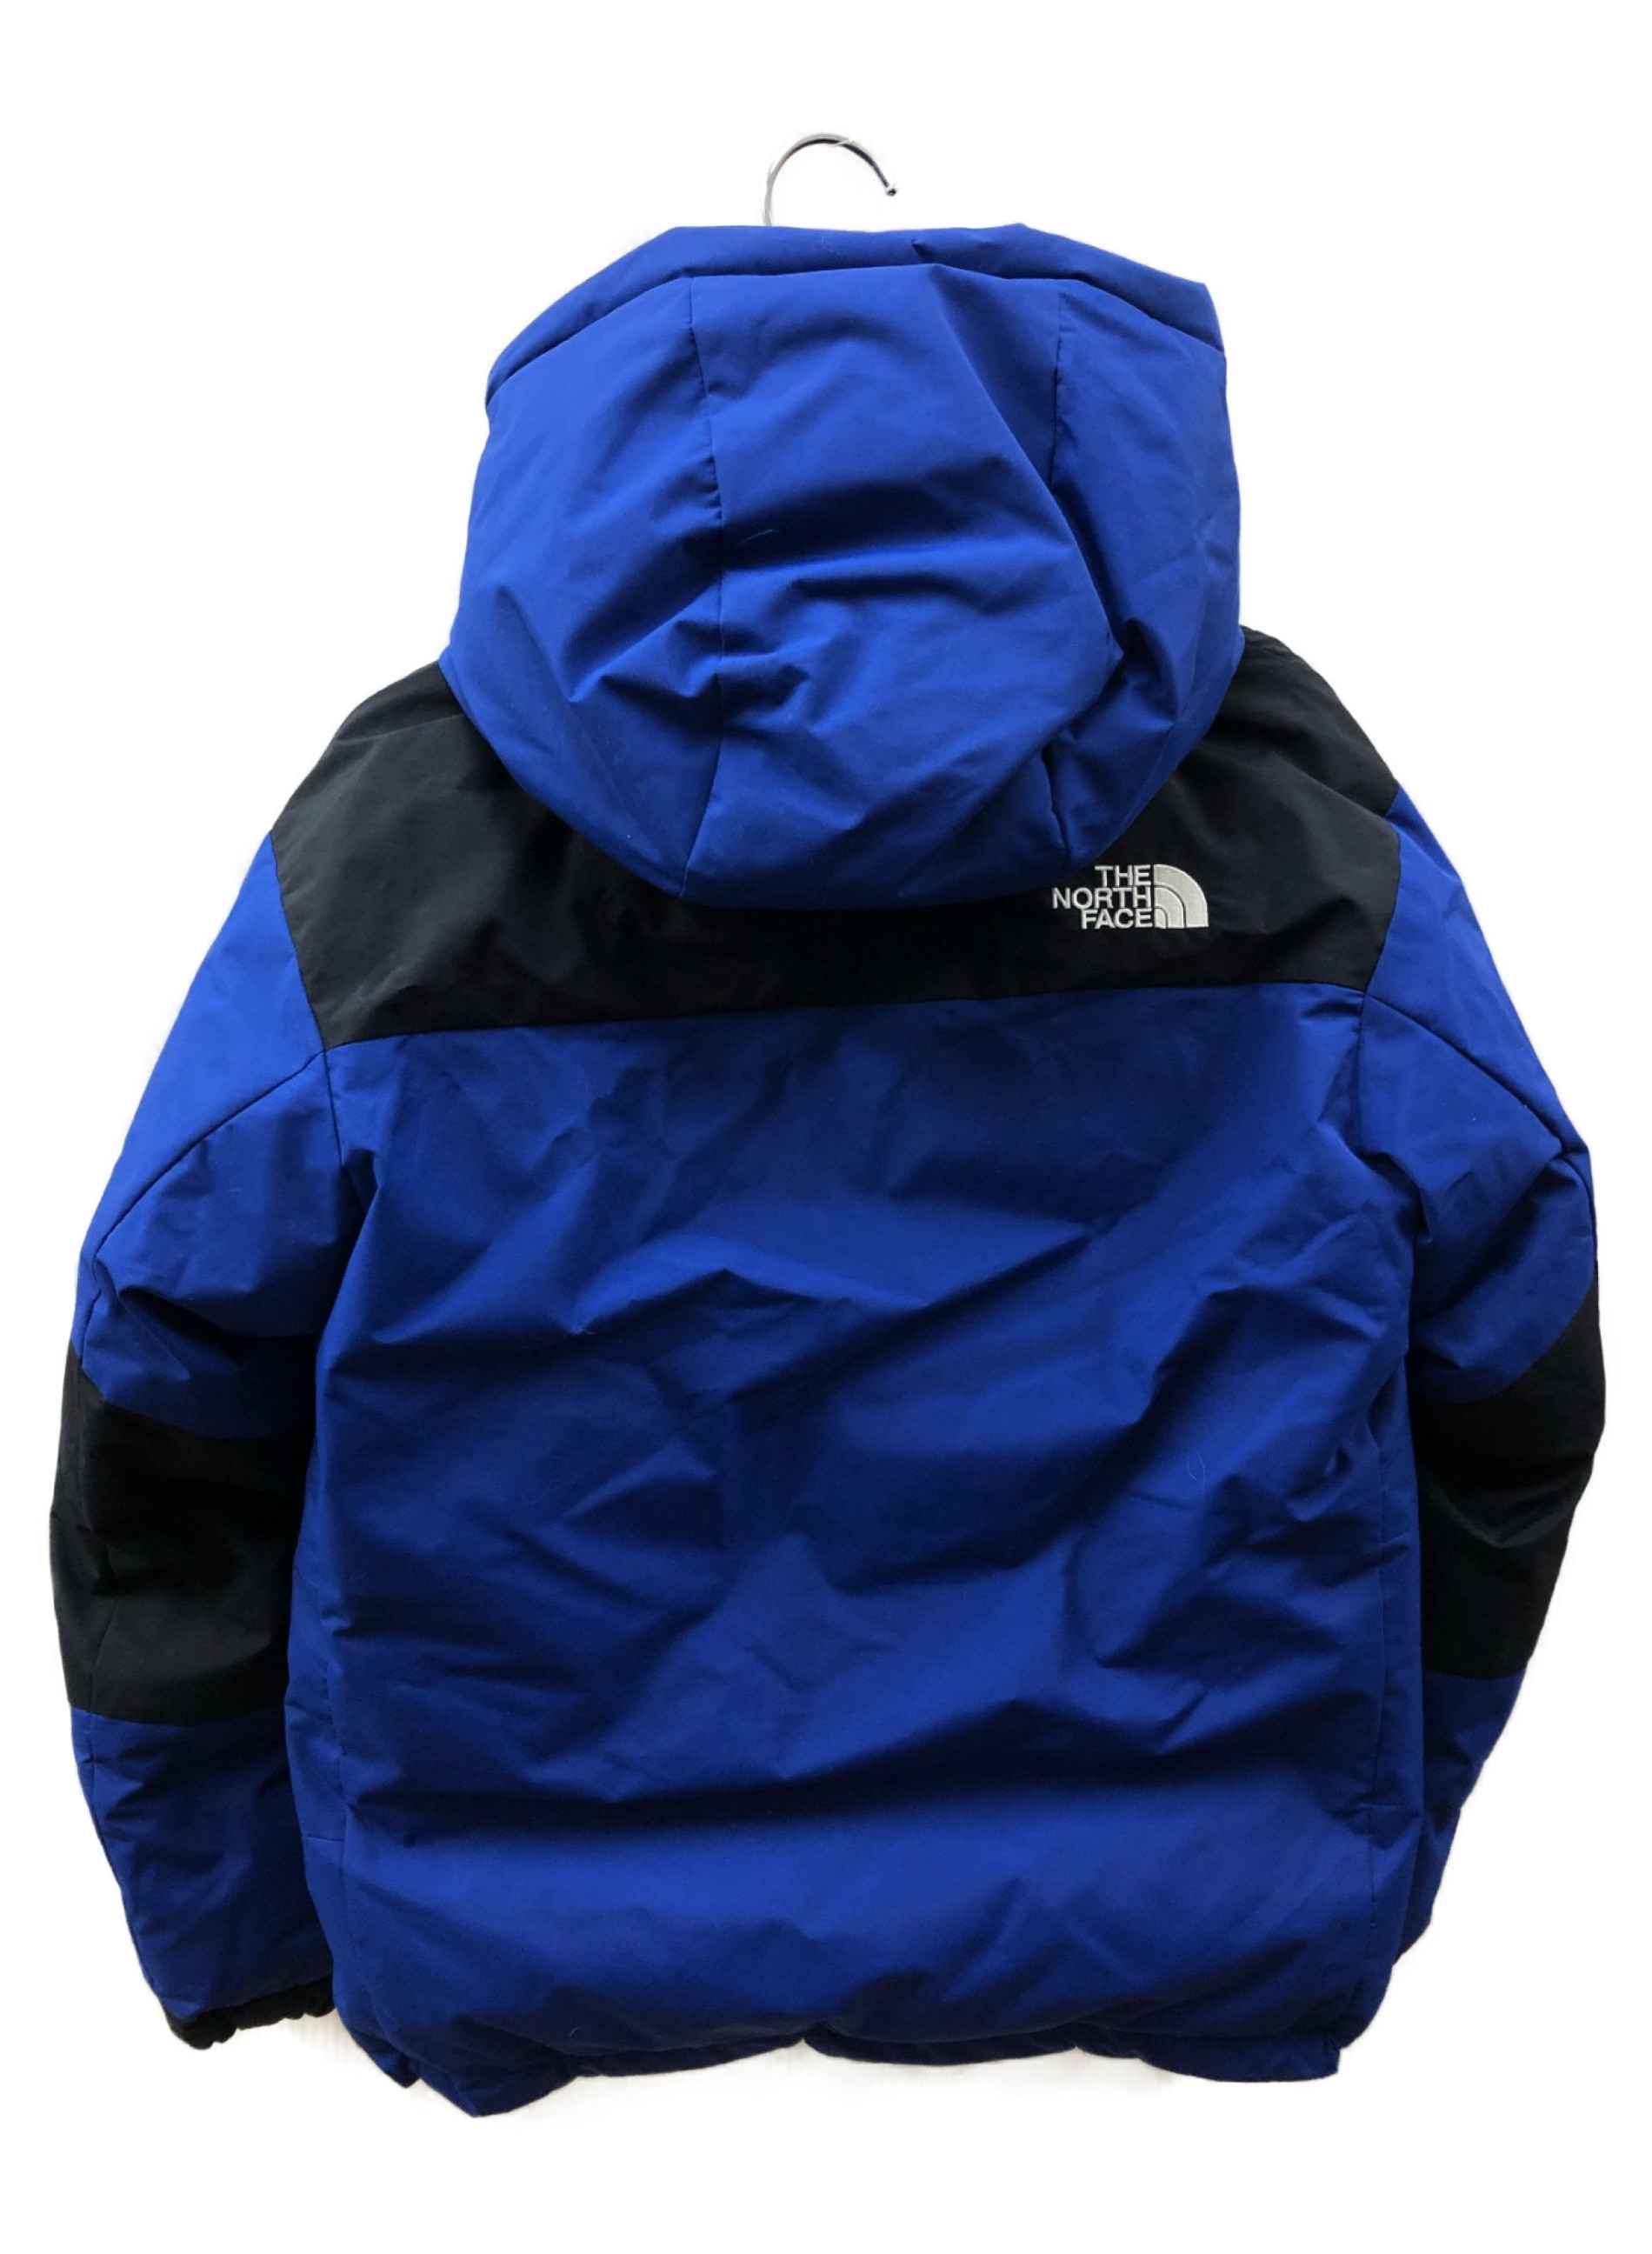 THE NORTH FACE (ザノースフェイス) キッズバルトロライトジャケット ブルー サイズ:KIDS 150 KIDS 150サイズ  NDJ91866